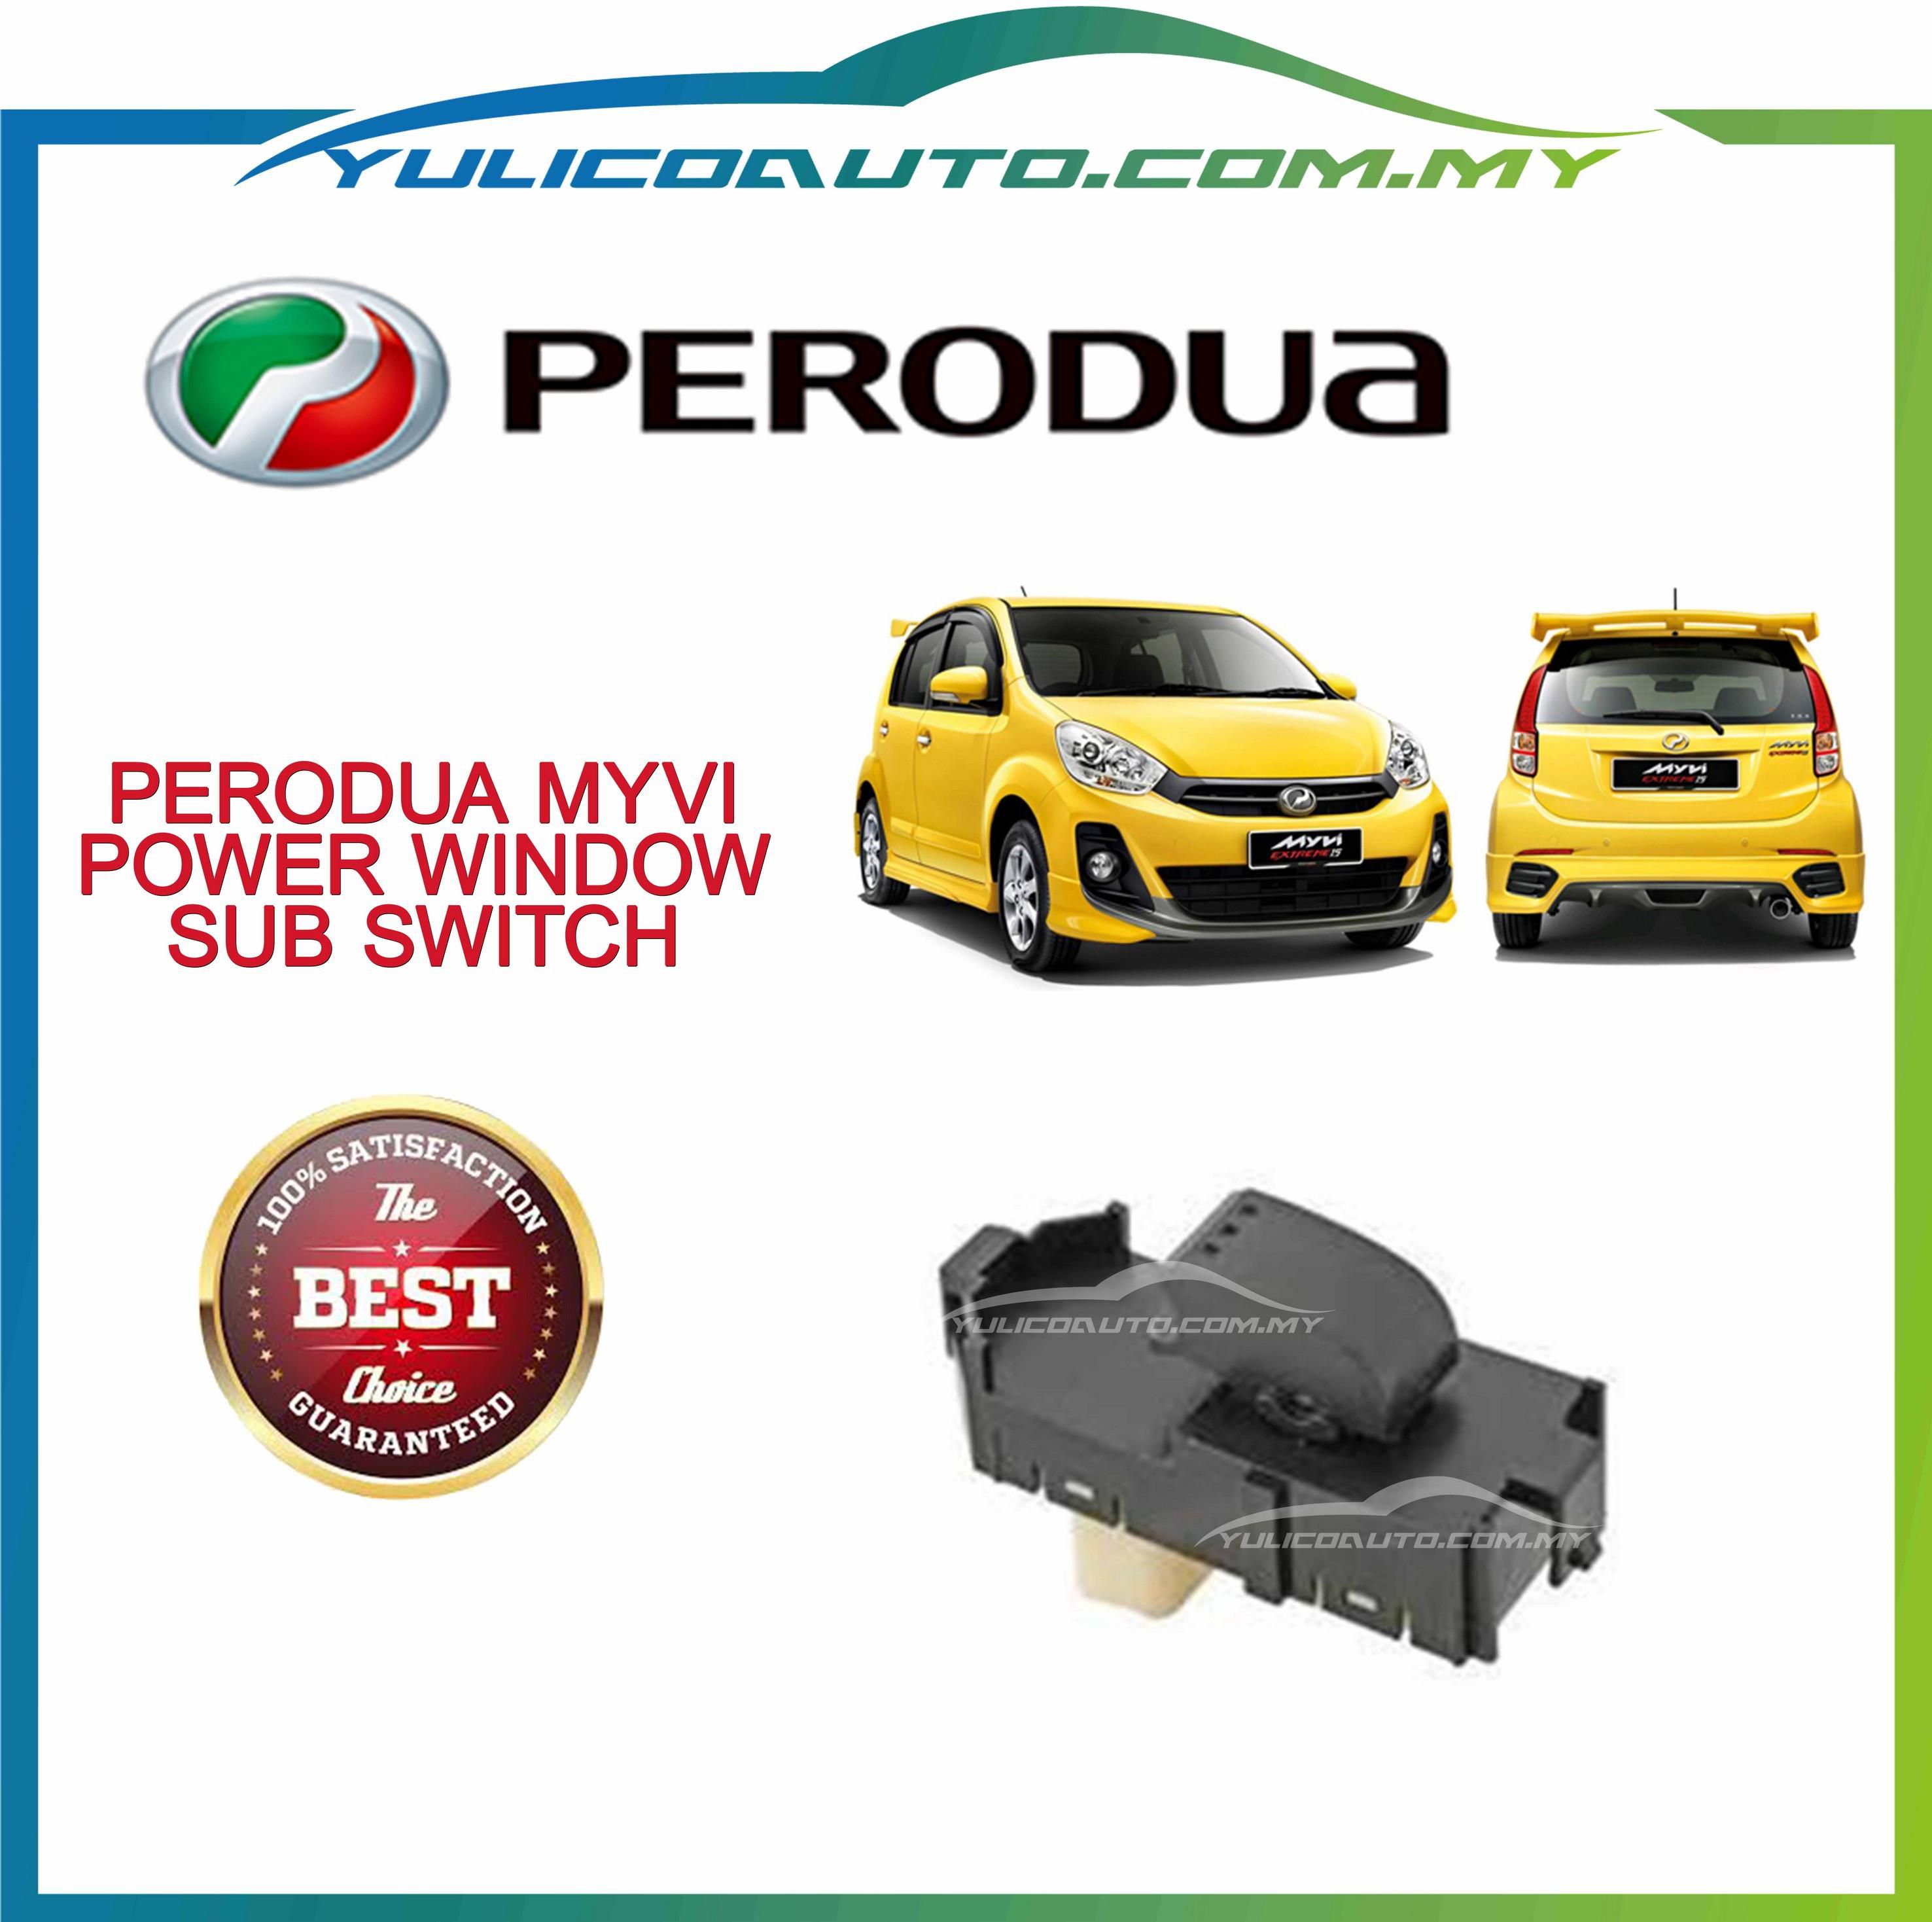 OEM Perodua Myvi Power Window Sub Switch (without housing)